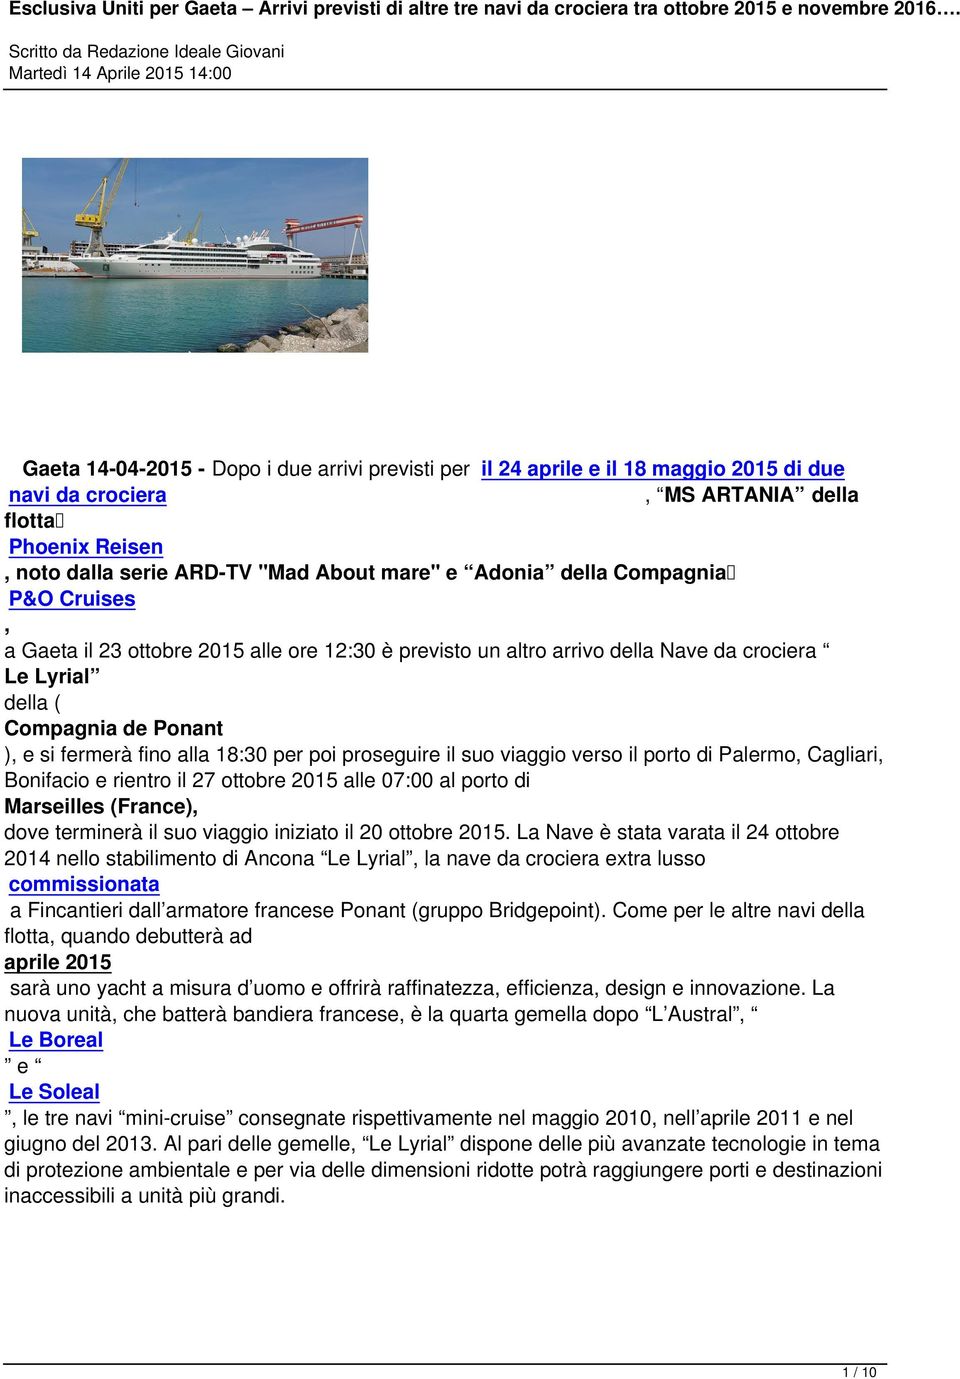 della Compagnia P&O Cruises, a Gaeta il 23 ottobre 2015 alle ore 12:30 è previsto un altro arrivo della Nave da crociera Le Lyrial della ( Compagnia de Ponant ), e si fermerà fino alla 18:30 per poi